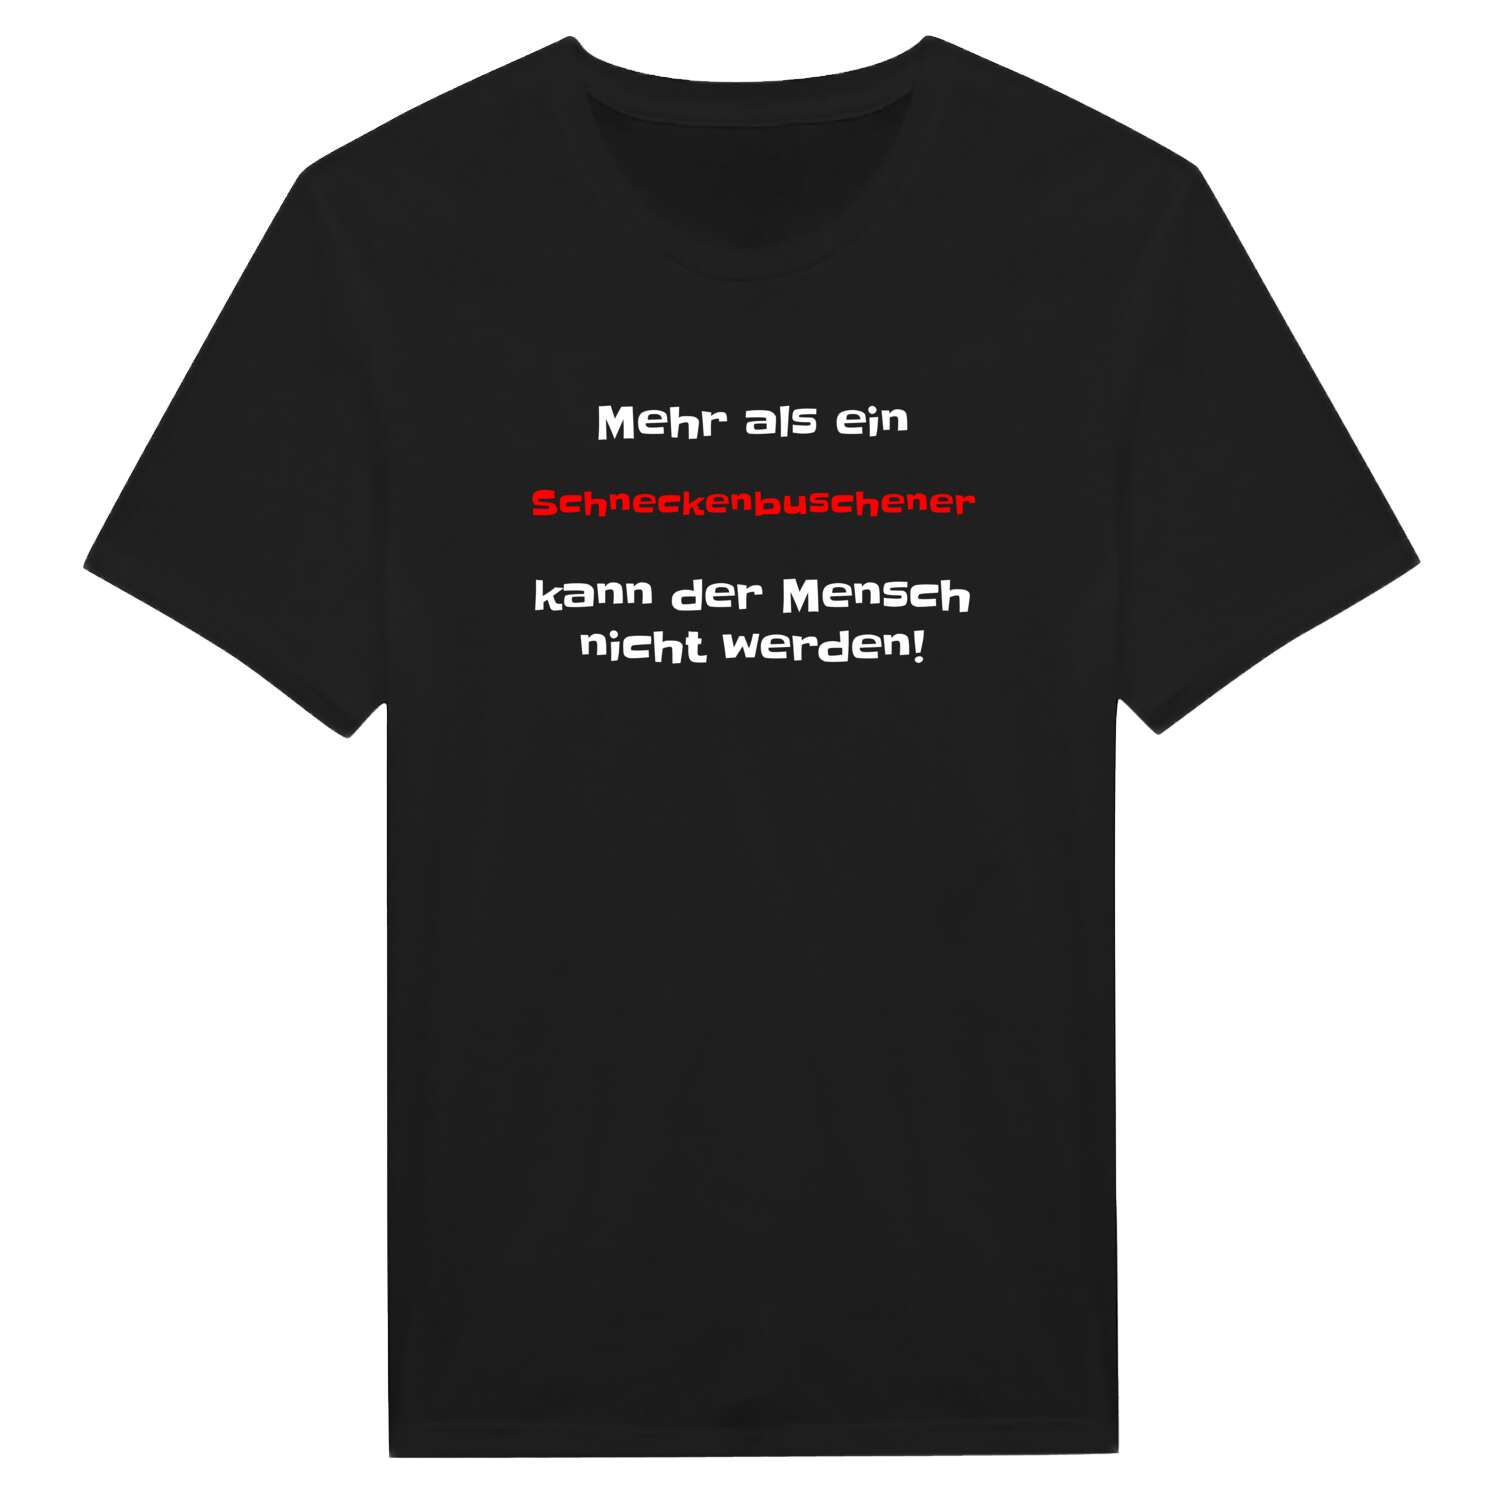 Schneckenbusch T-Shirt »Mehr als ein«